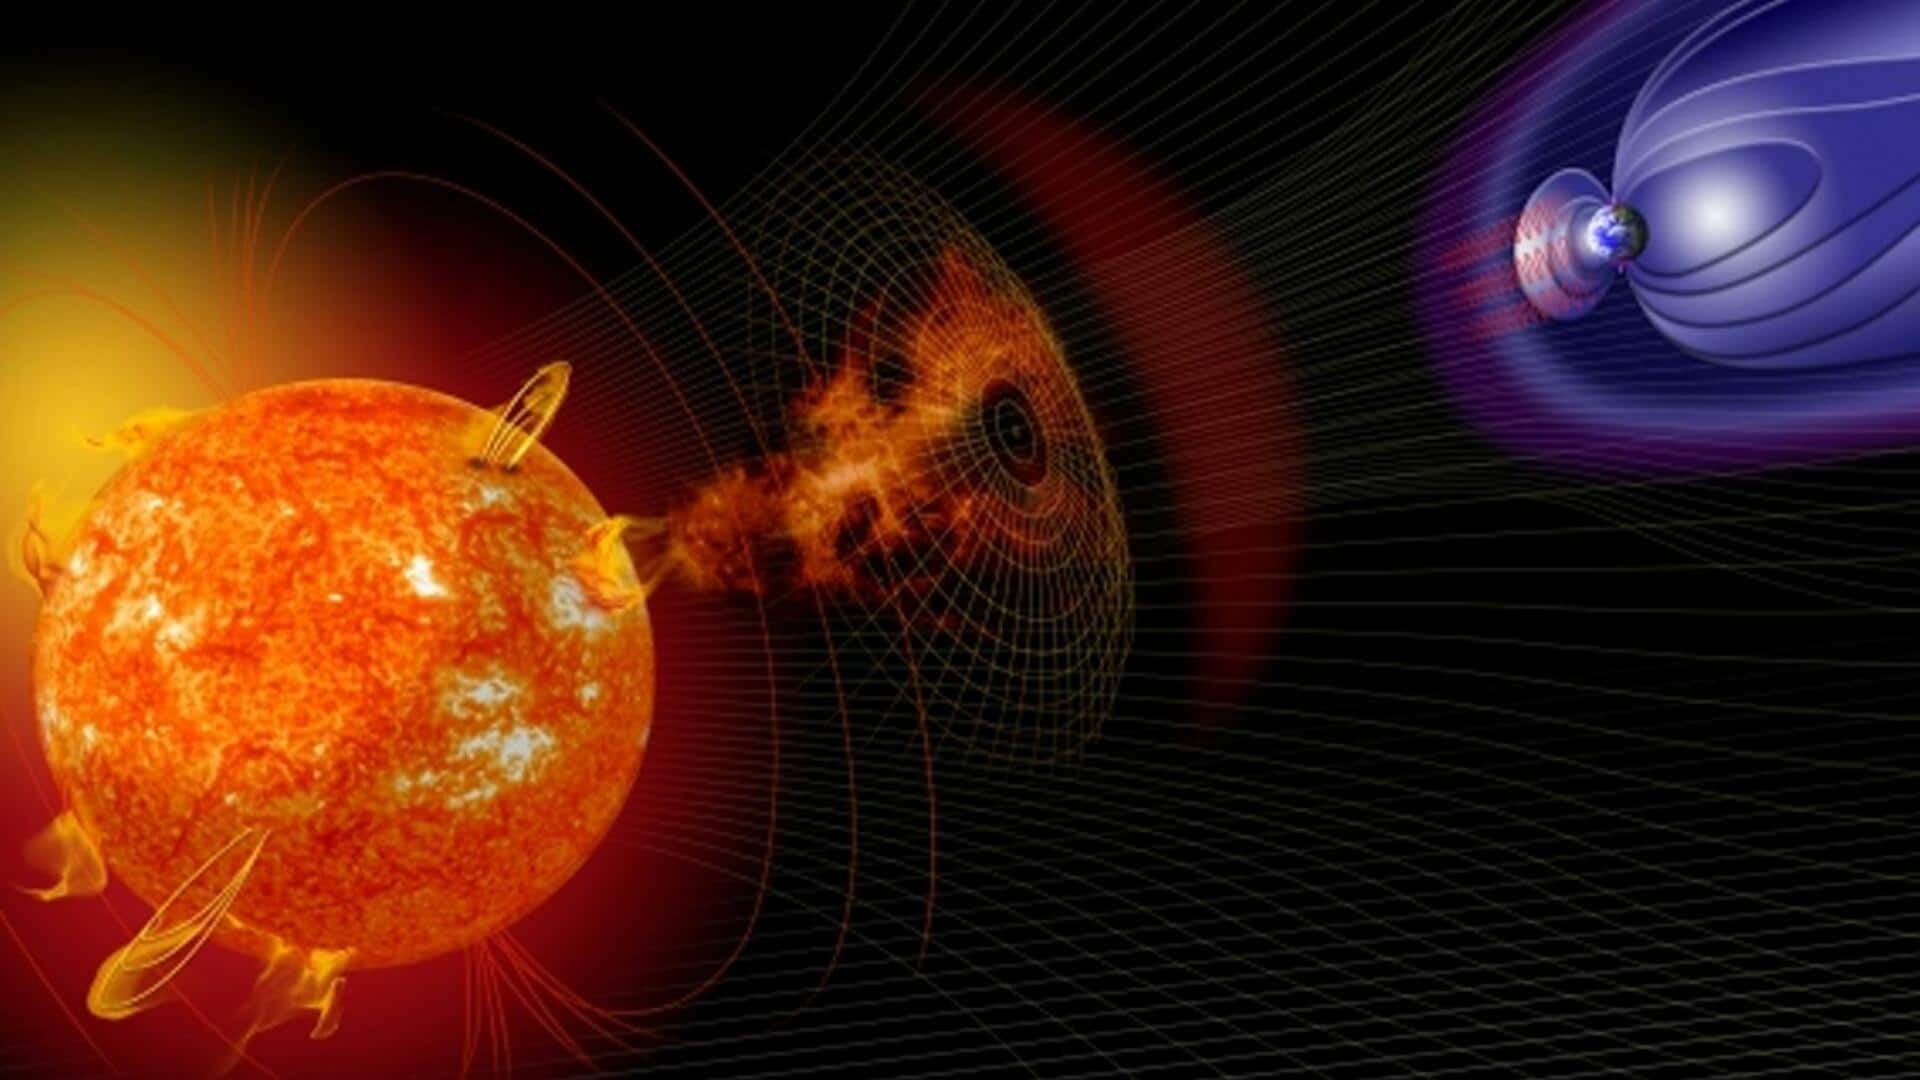 फरवरी में रिकॉर्ड स्तर पर देखे गए सनस्पॉट, पृथ्वी पर भीषण सौर तूफान आने की संभावना 